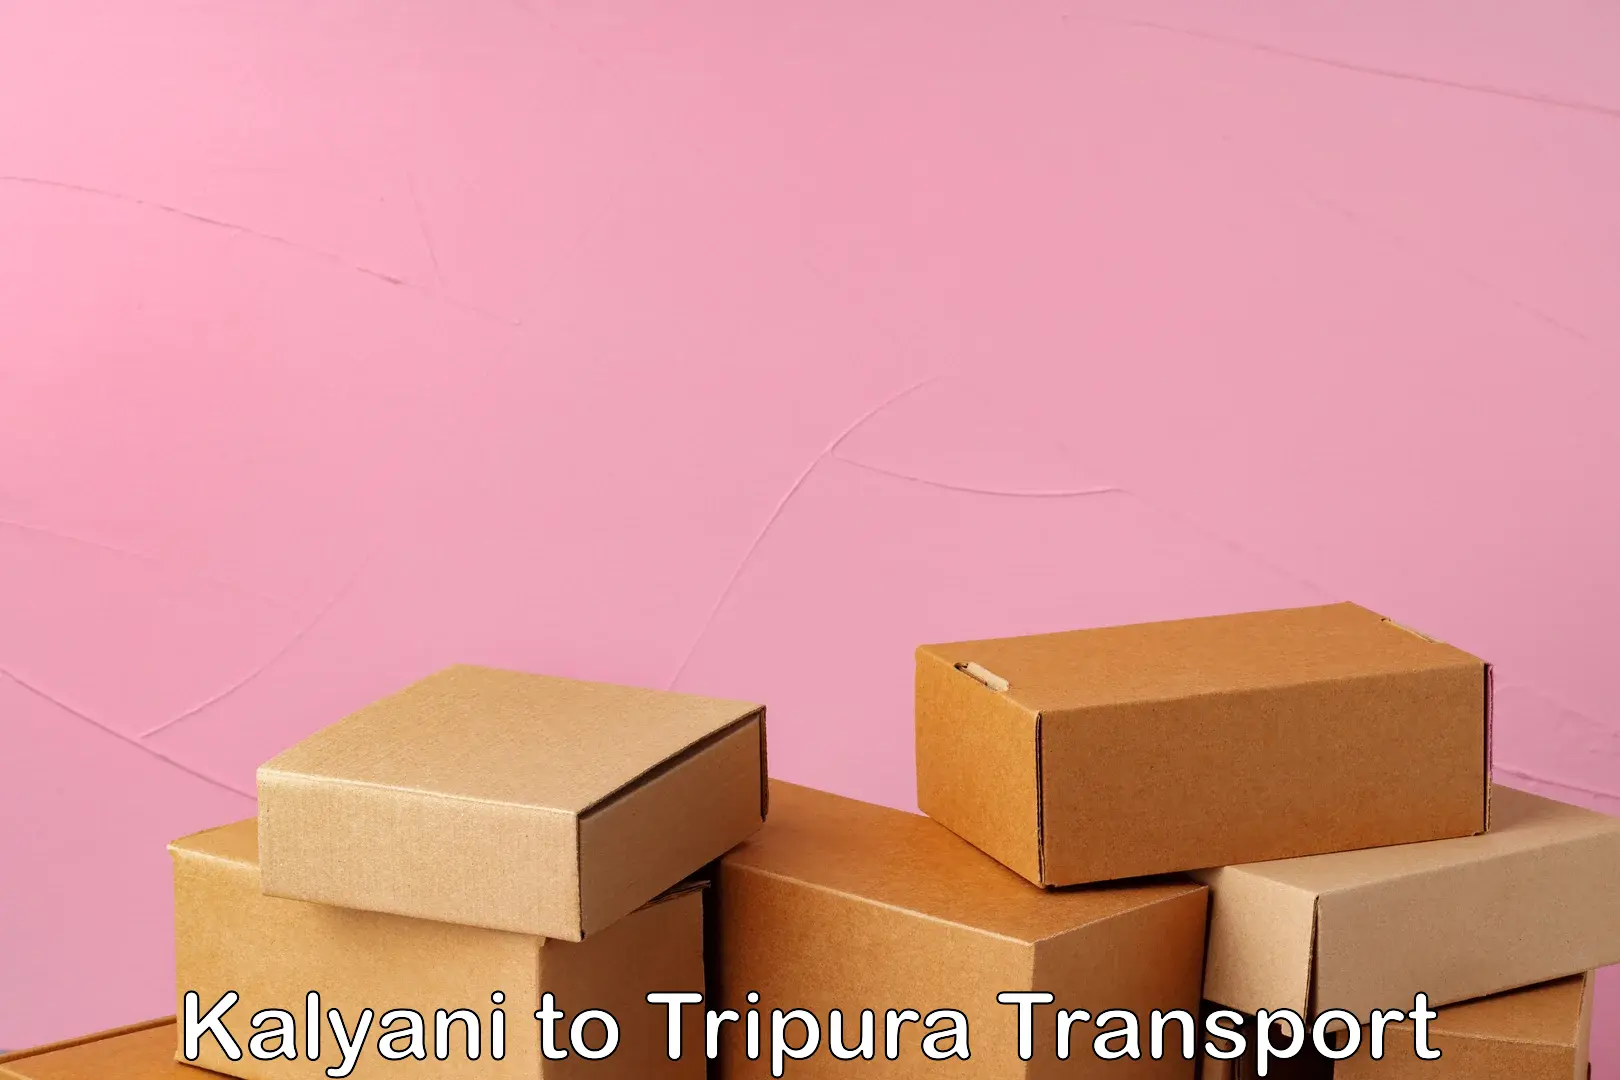 Furniture transport service in Kalyani to Kailashahar